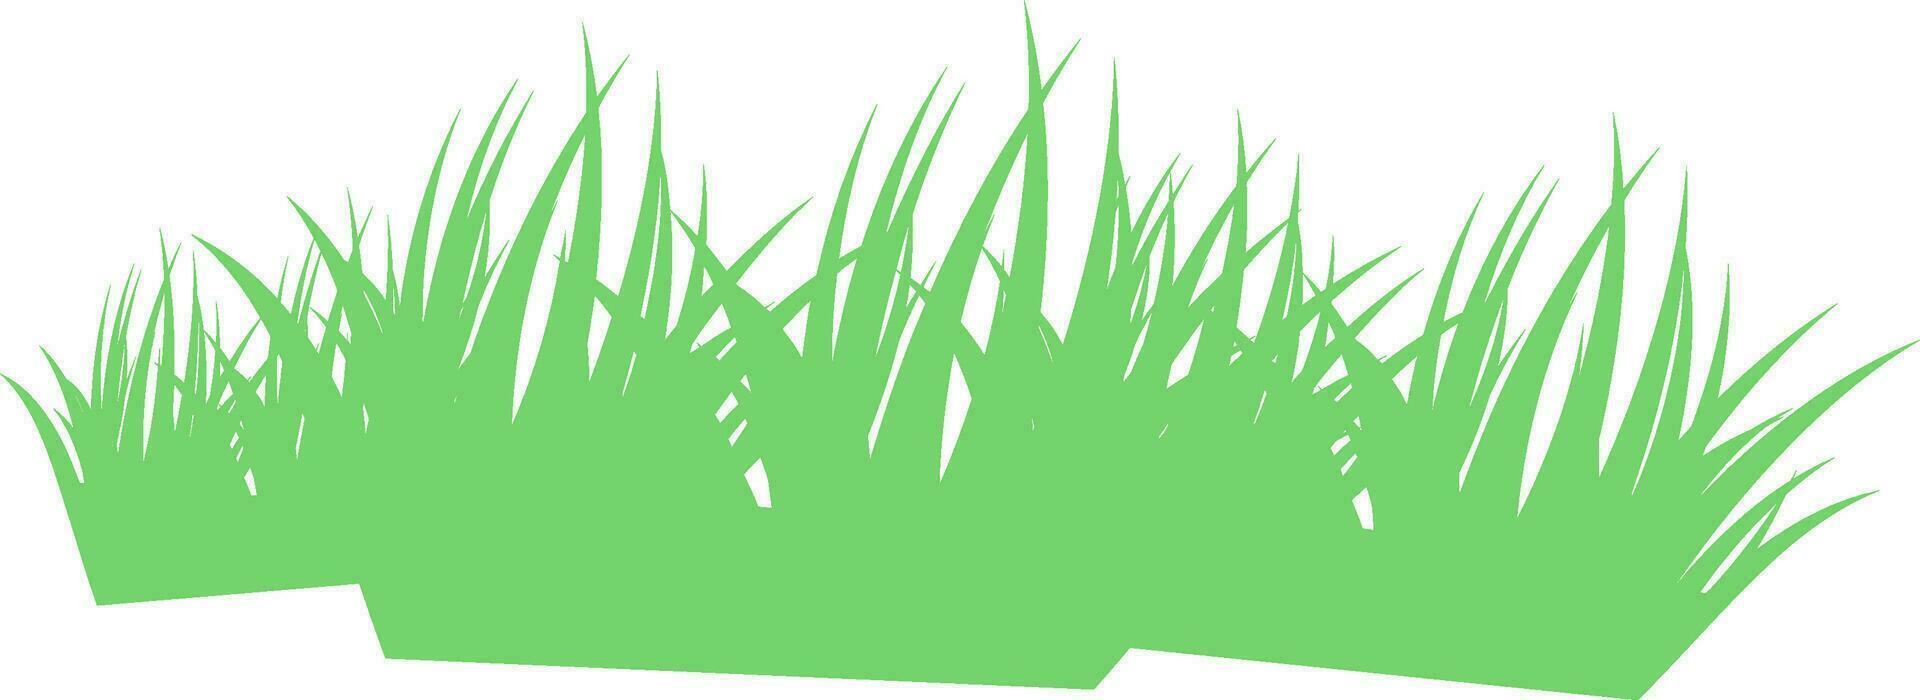 ilustração do verde grama. vetor